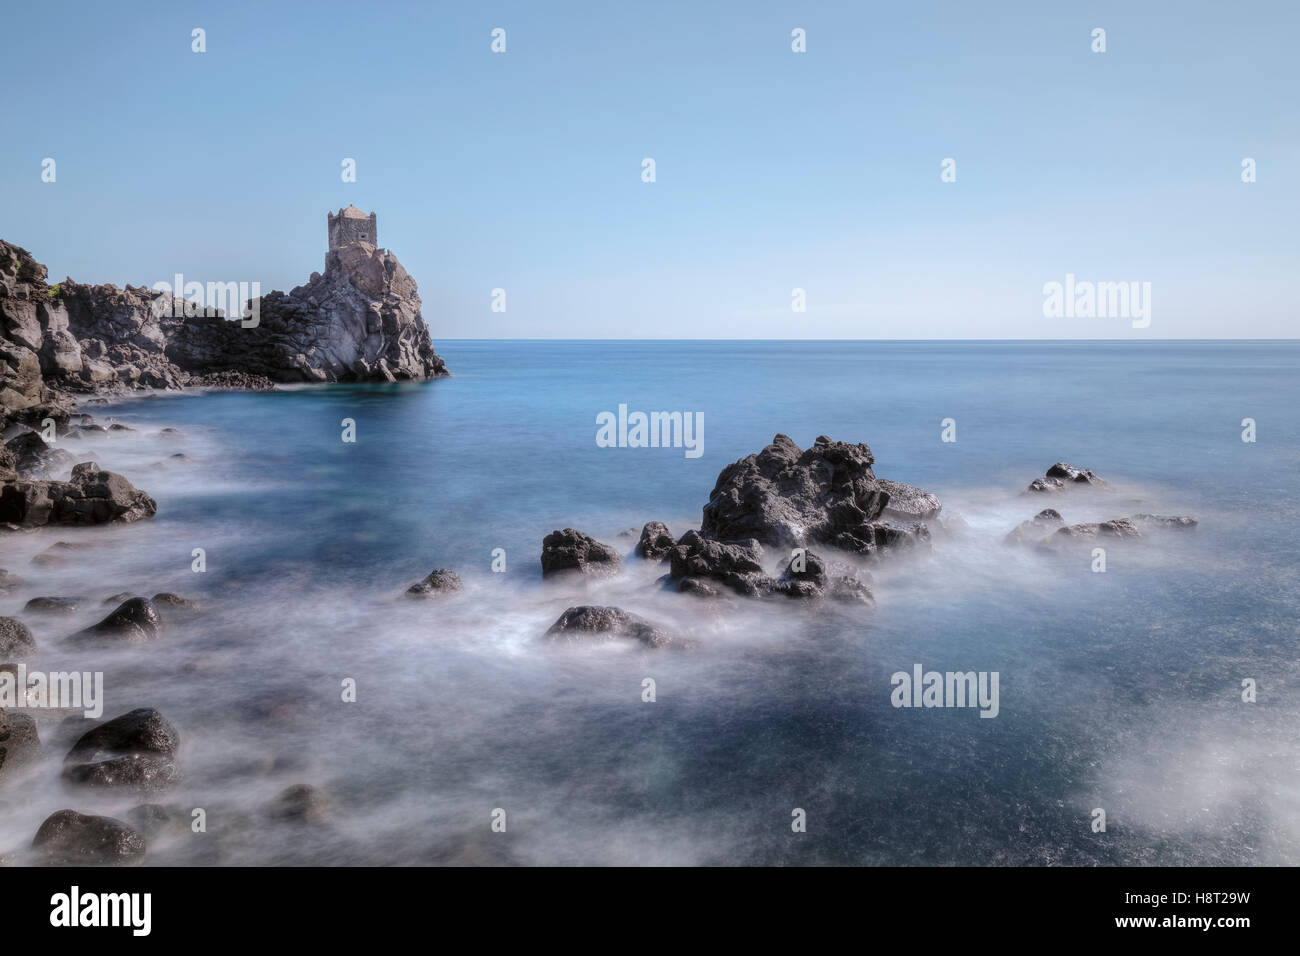 Torre di avvistamento, Santa Tecla, Acireale, Catania, Sicilia, Italia Foto Stock